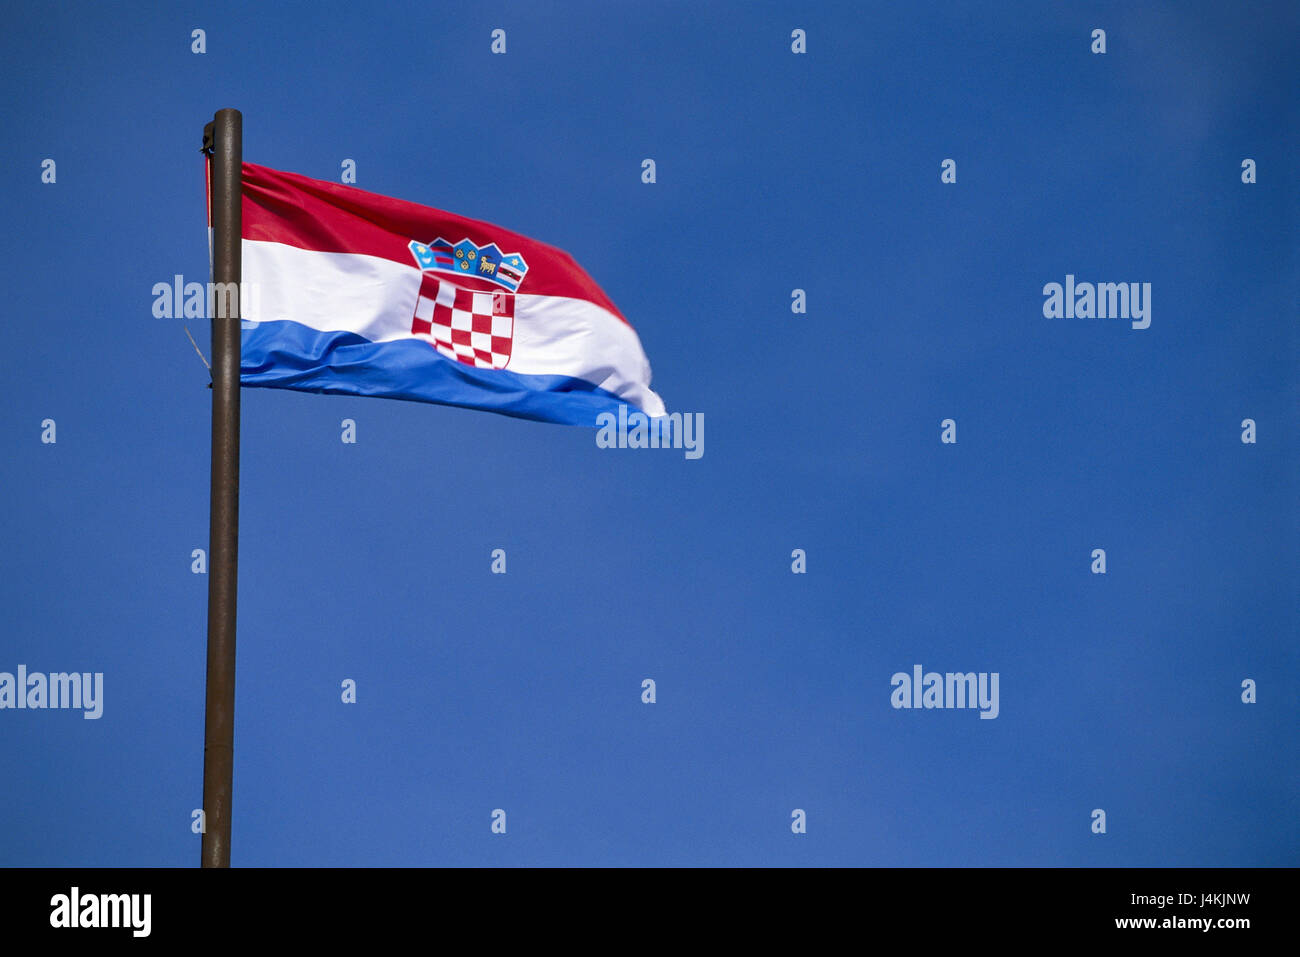 https://c8.alamy.com/compde/j4kjnw/kroatien-nationalflagge-europa-sudost-europa-balkan-halbinsel-der-balkan-halbinsel-republika-hrvatska-fahne-fahnenmast-fahnenmast-flagge-flagge-wappen-himmel-j4kjnw.jpg